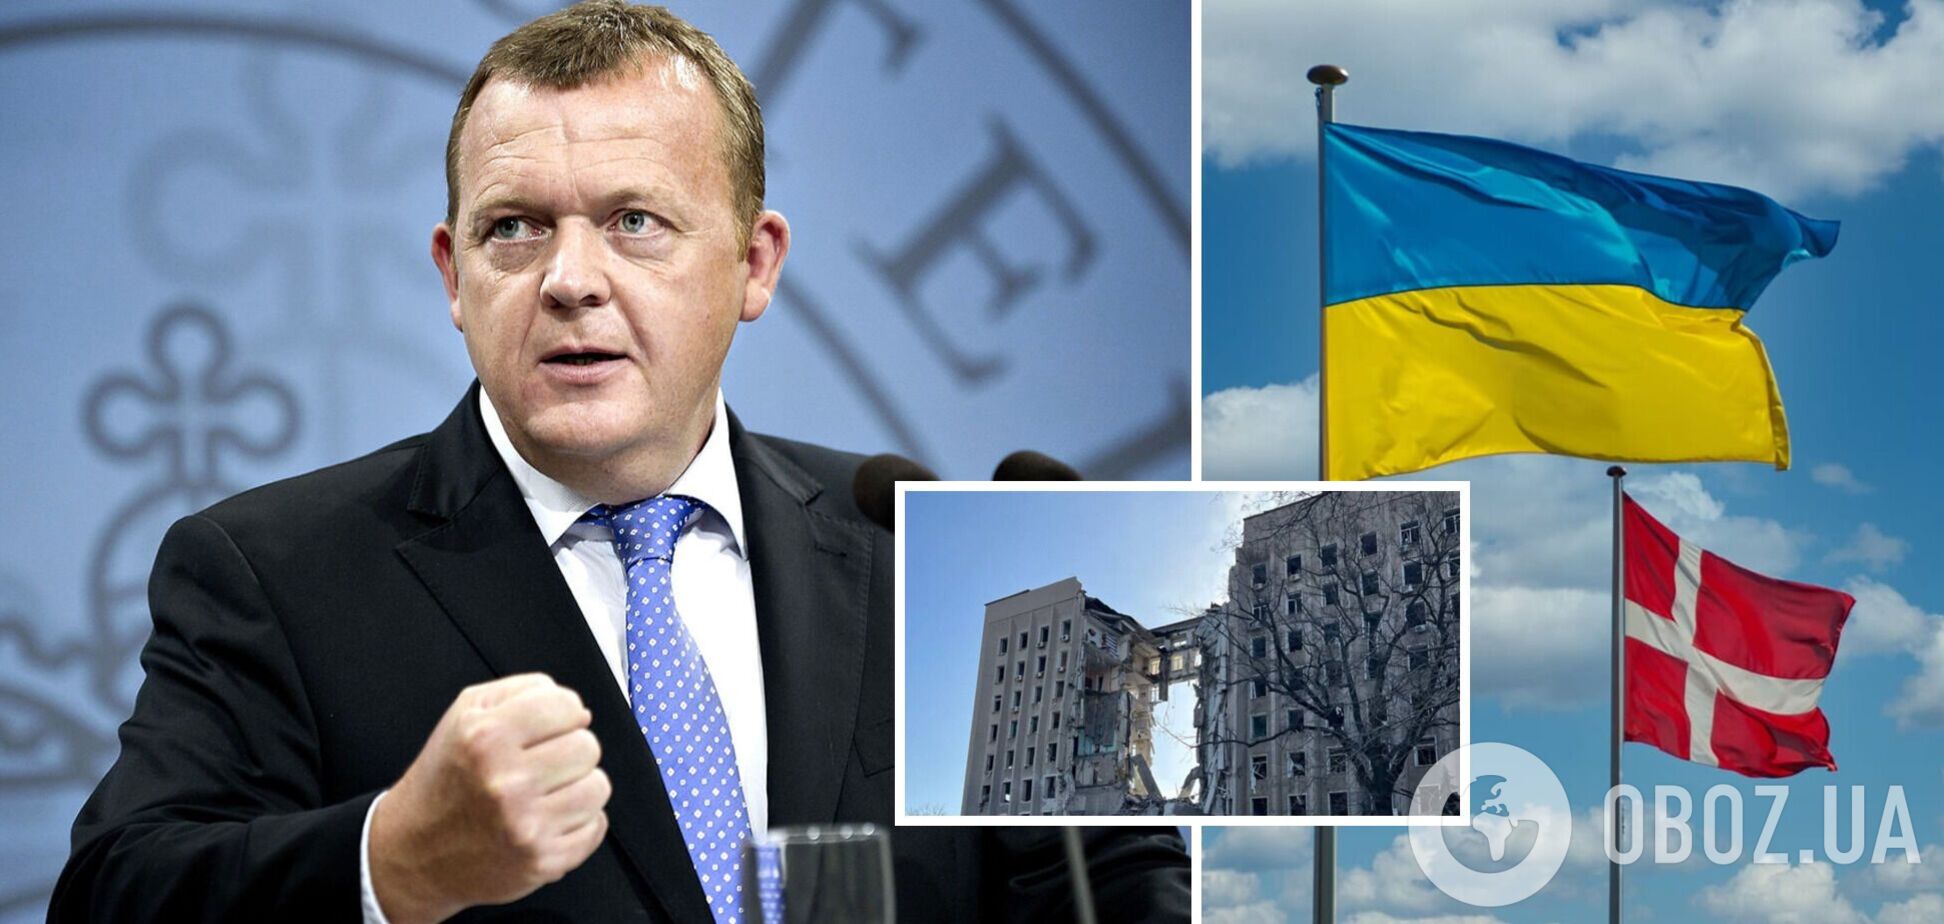 Особлива увага Миколаєву: до кінця року Данія виділить на відбудову України мільярд євро